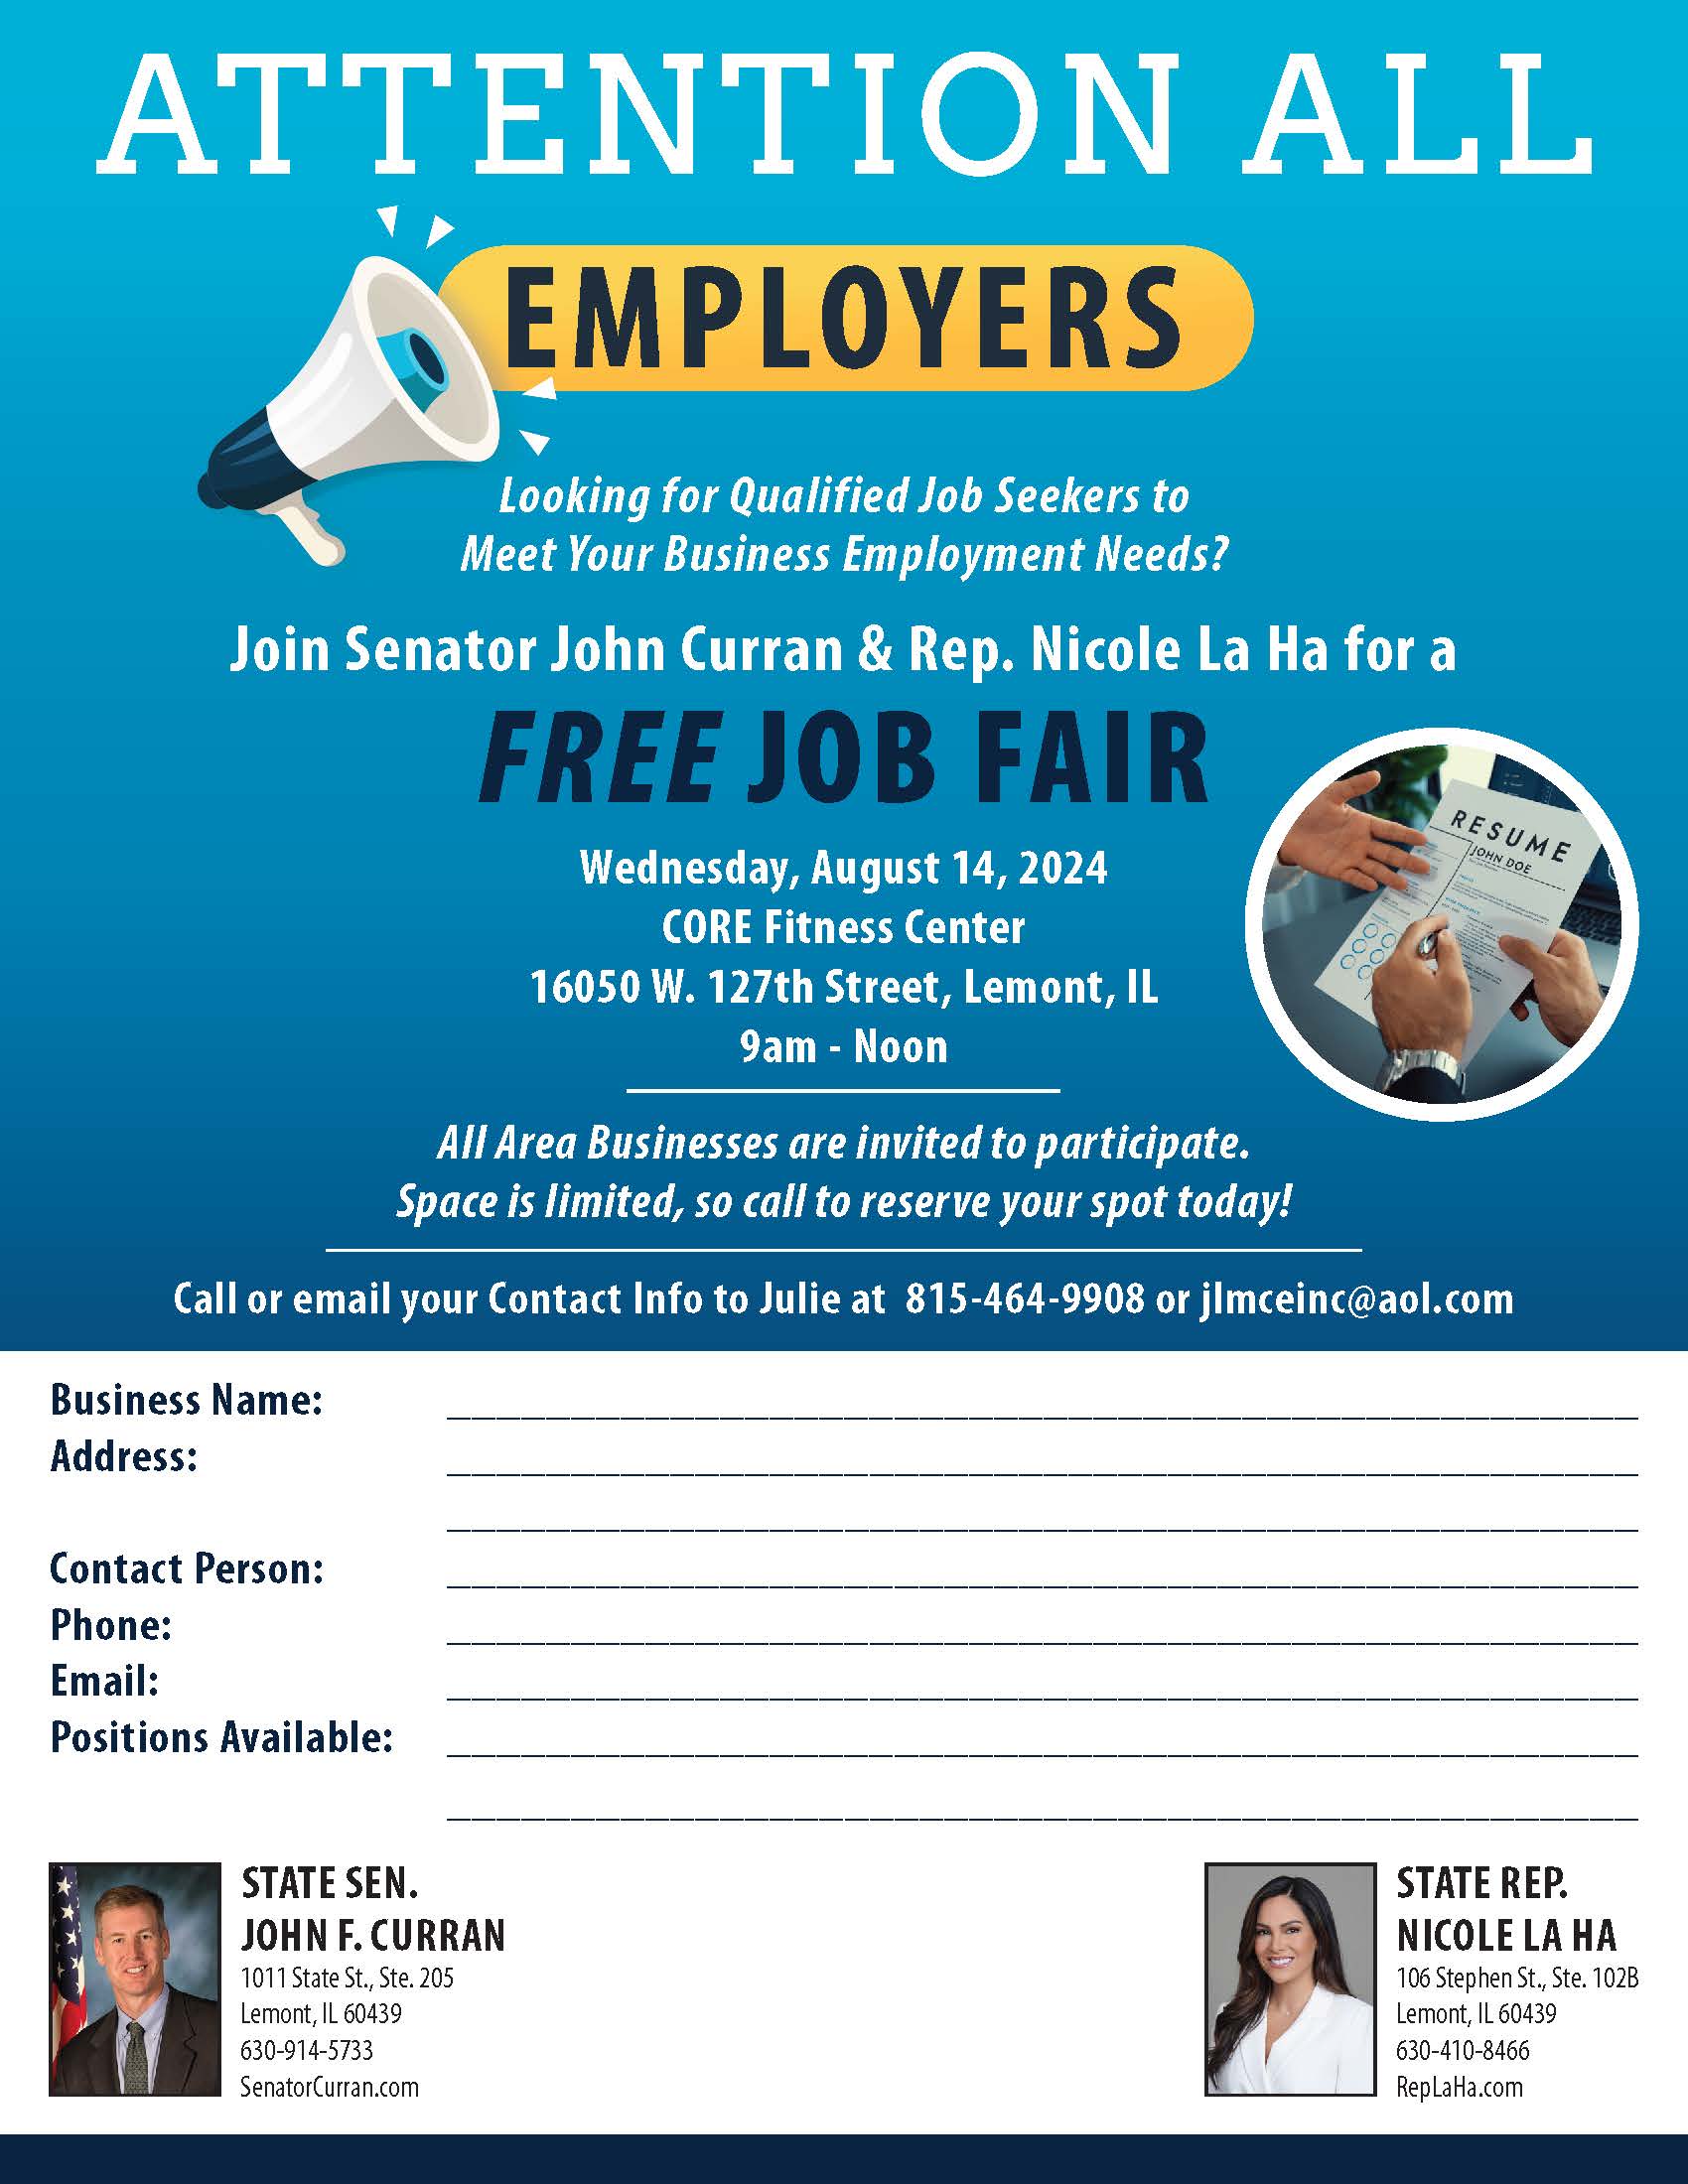 Job Fair Hosted by Sen. John Curran and Rep. Nicole La Ha